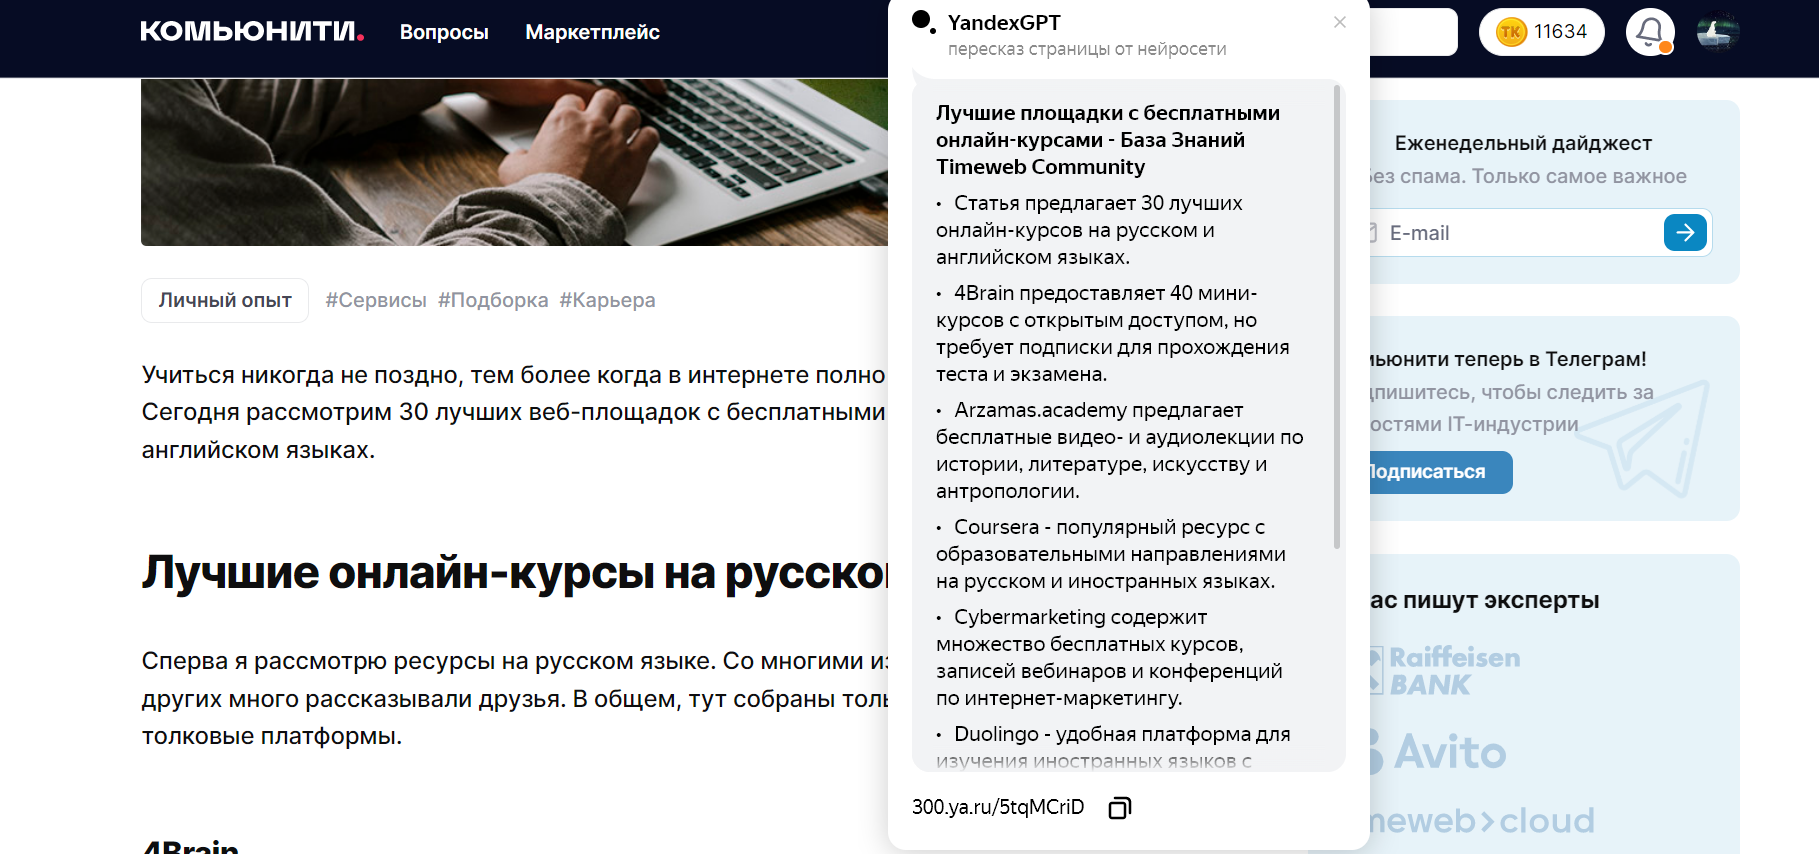 Пример пересказа статьи от YandexGPT